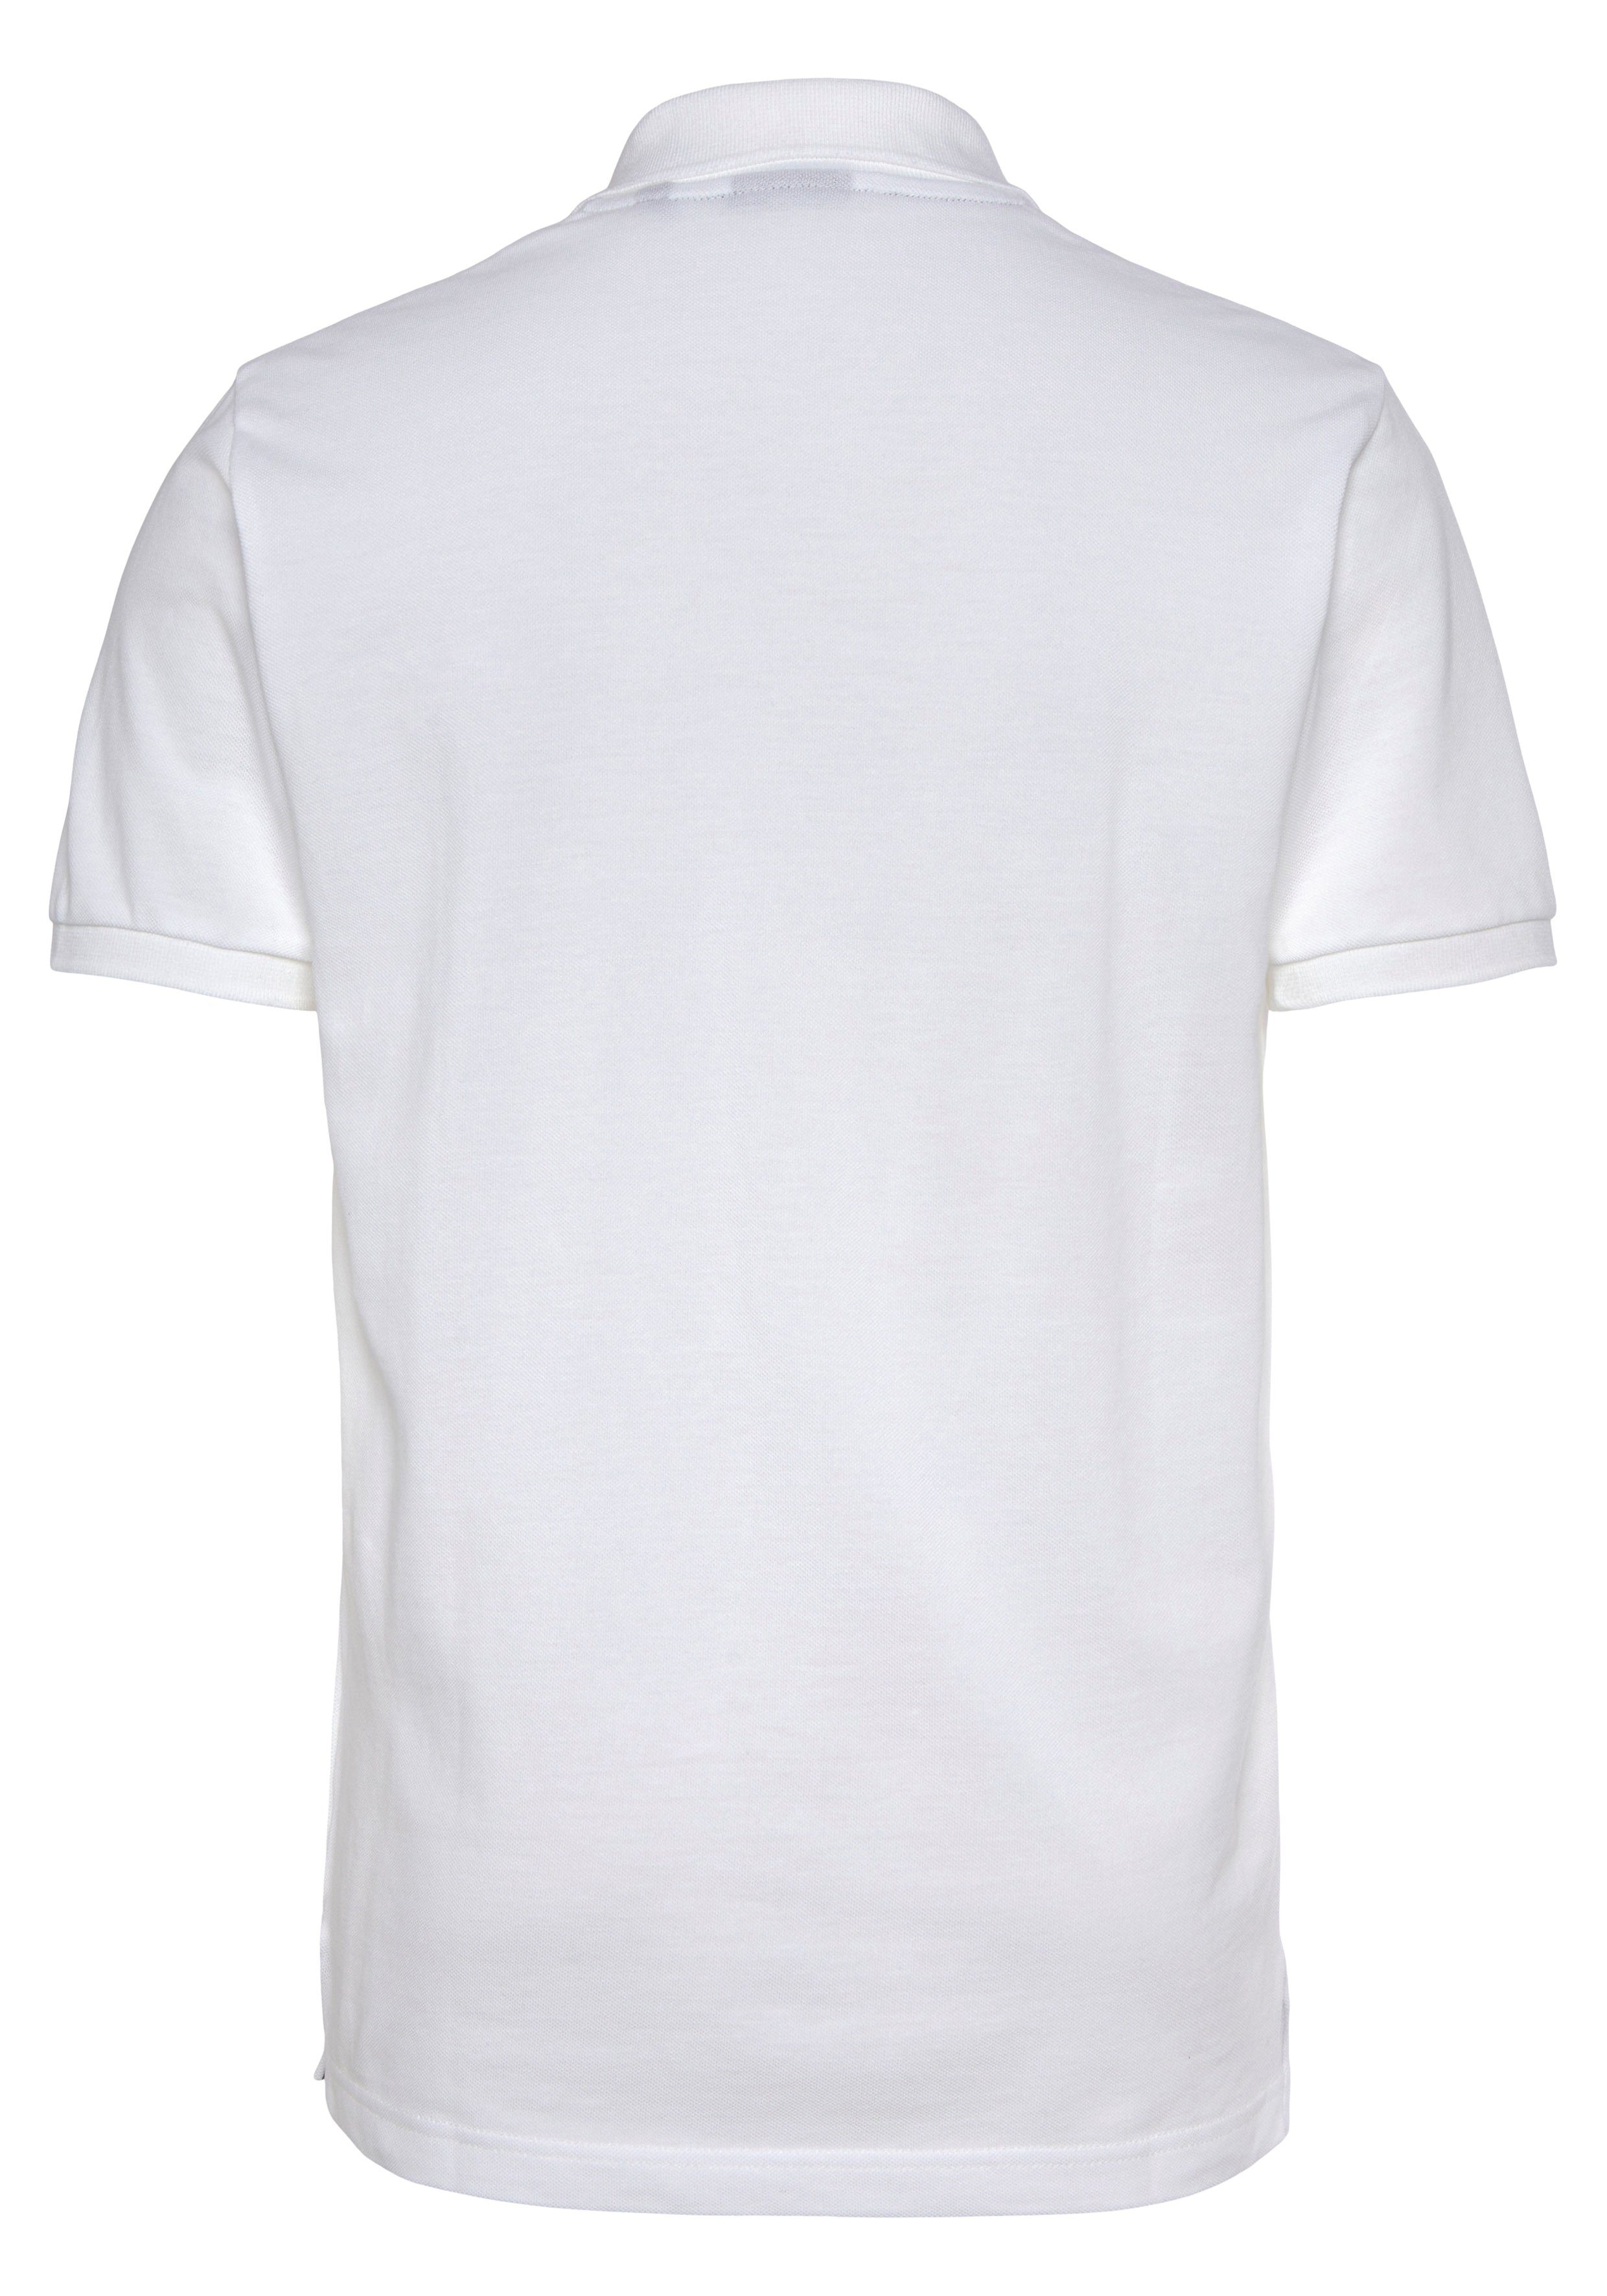 Shirt, Gant weiß Poloshirt Smart Piqué-Polo PIQUE Qualität Casual, KA RUGGER Fit, Regular Premium MD.